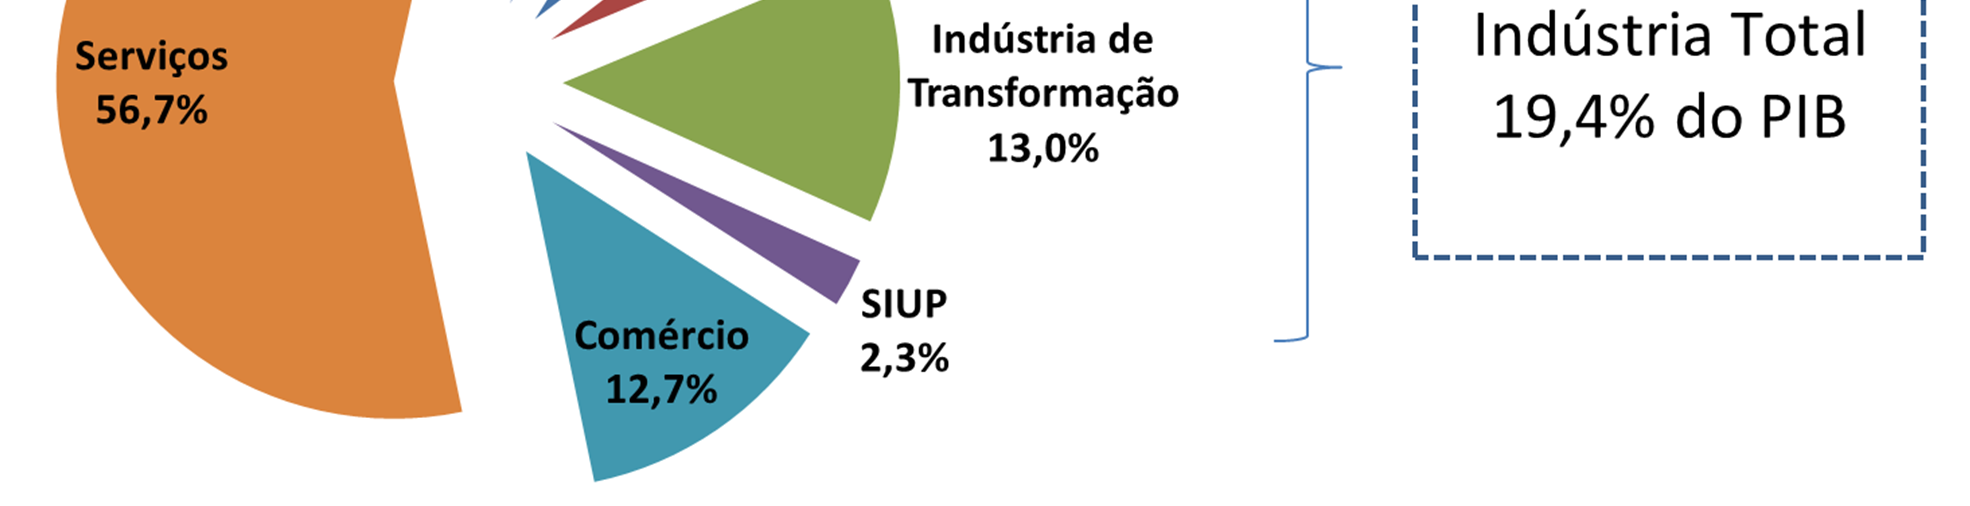 2. A INDÚSTRIA BRASILEIRA ATUALMENTE 2.1. Principais Setores da Indústria no PIB Segundo dados das Contas Nacionais do IBGE, em 2013, a indústria de transformação foi responsável por 13,0% do PIB.